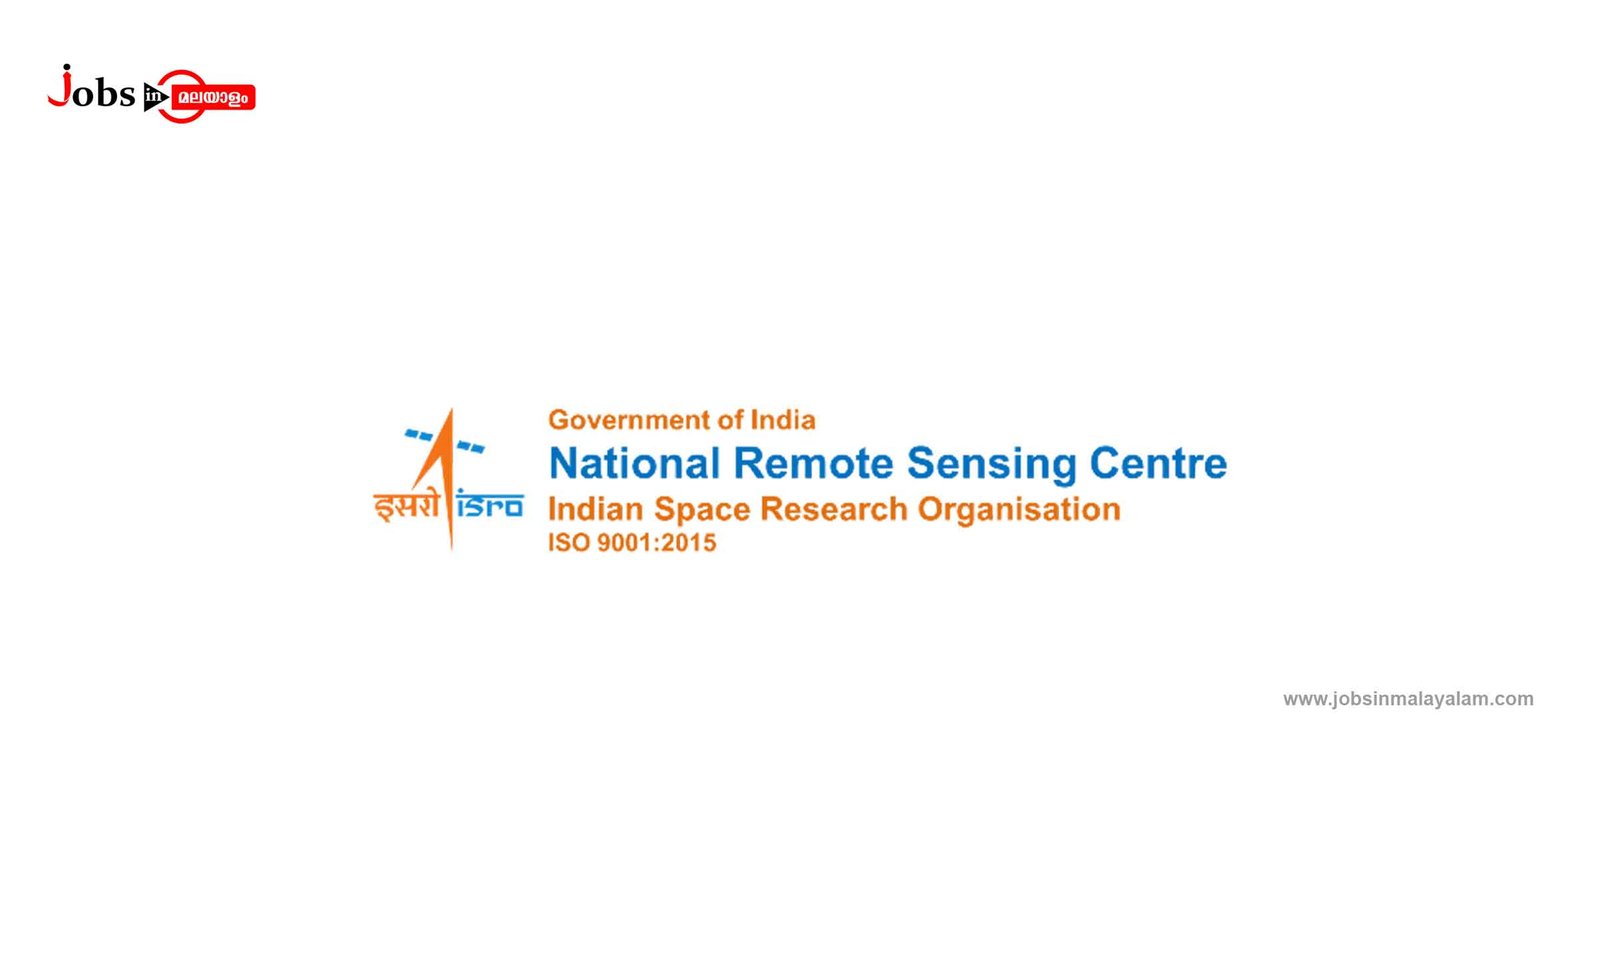 National Remote Sensing Centre (NRSC)